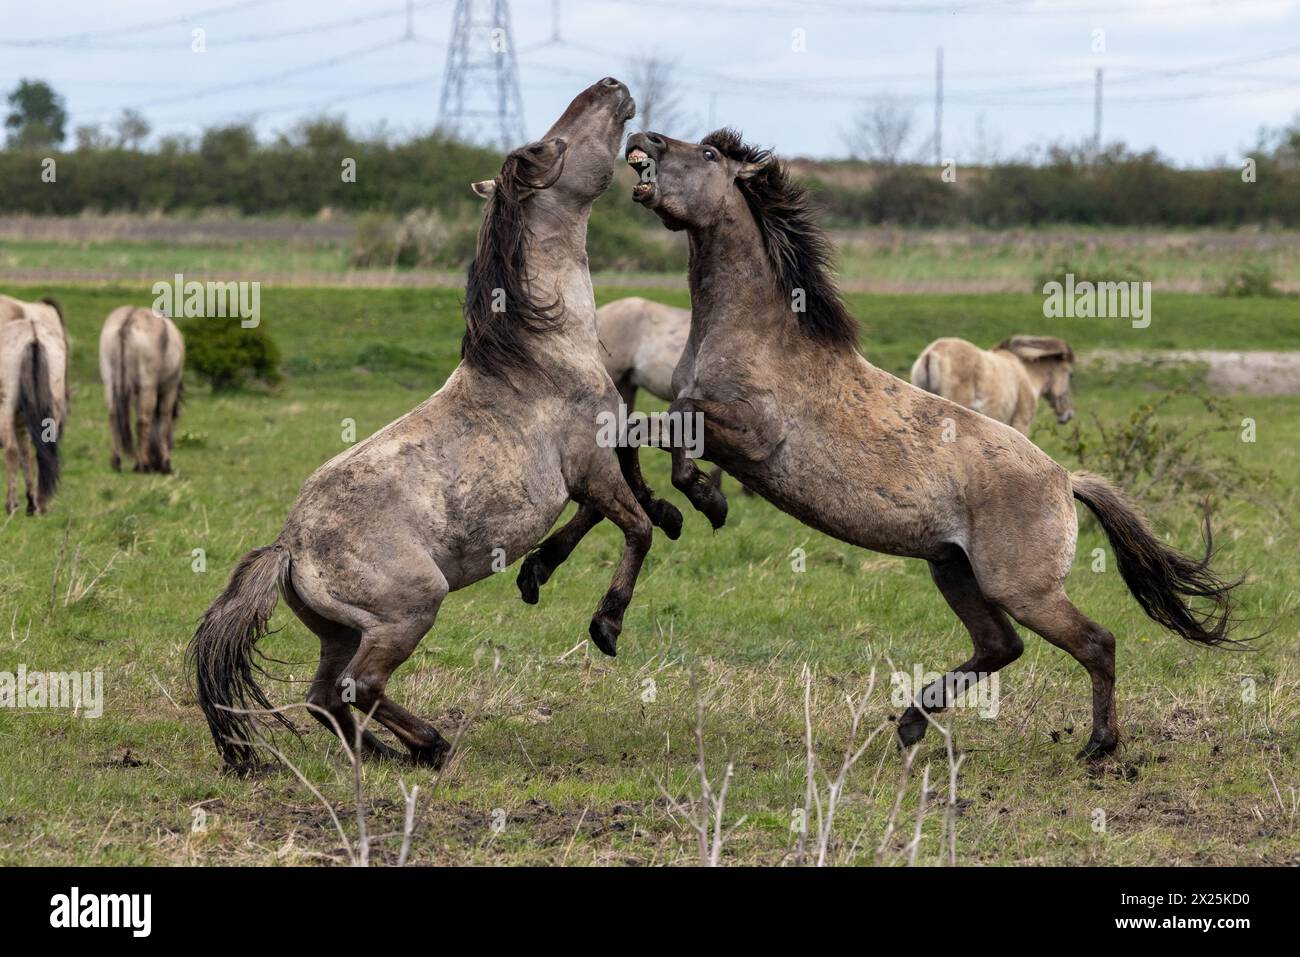 Konik Pferde kämpfen auf Wicken Fen in Cambridgeshire. Zwei wilde Hengste kämpften in dramatischen Szenen im ENGLISCHEN Countr um die Dominanz Stockfoto